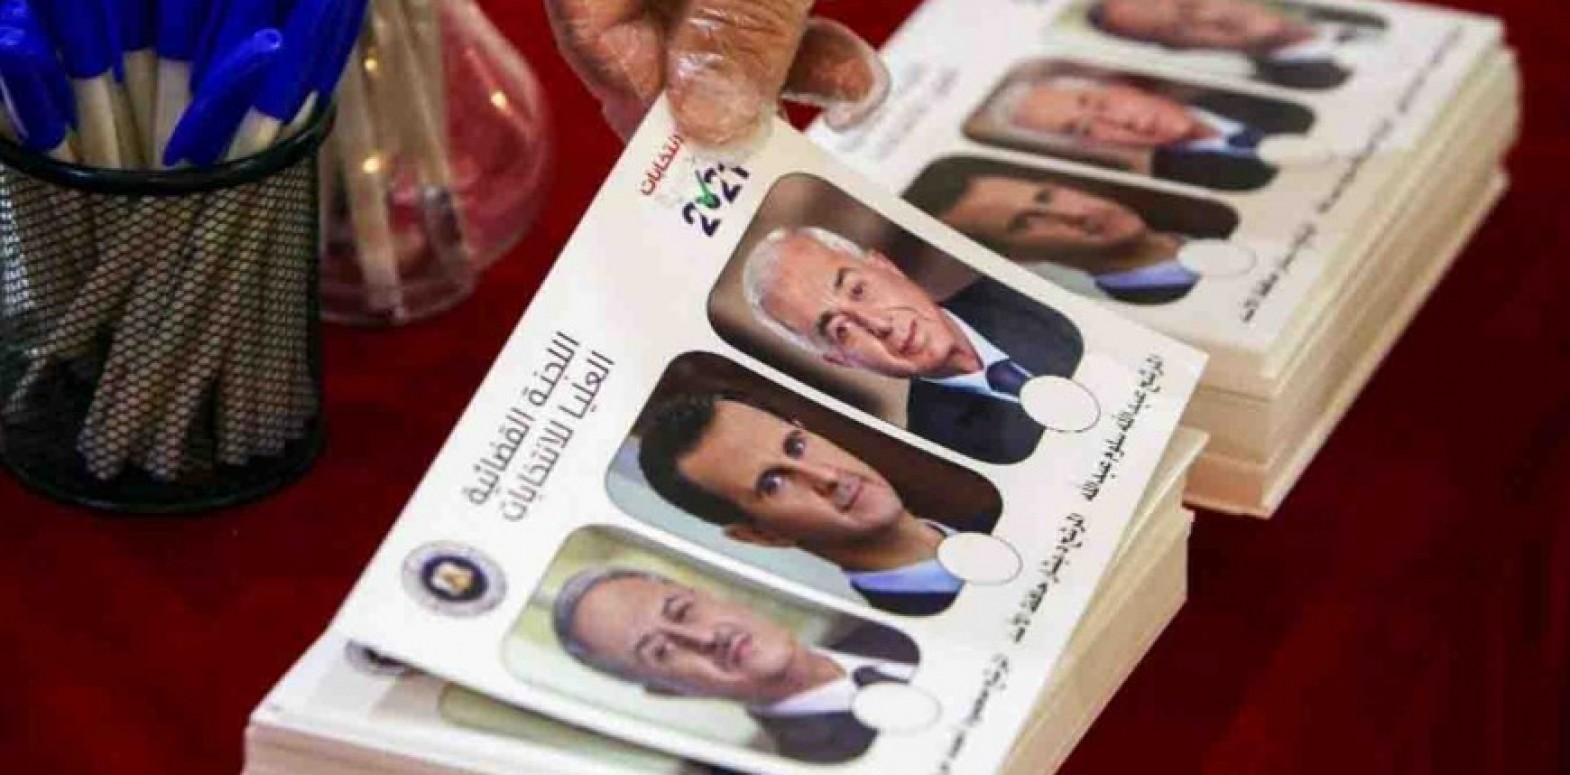 Teekked’in Raporu, "Suriye Cumhurbaşkanlığı Seçimlerine" İlişkin Yanlış Bilgi ve Sahtecilik Ortaya Çıkardı